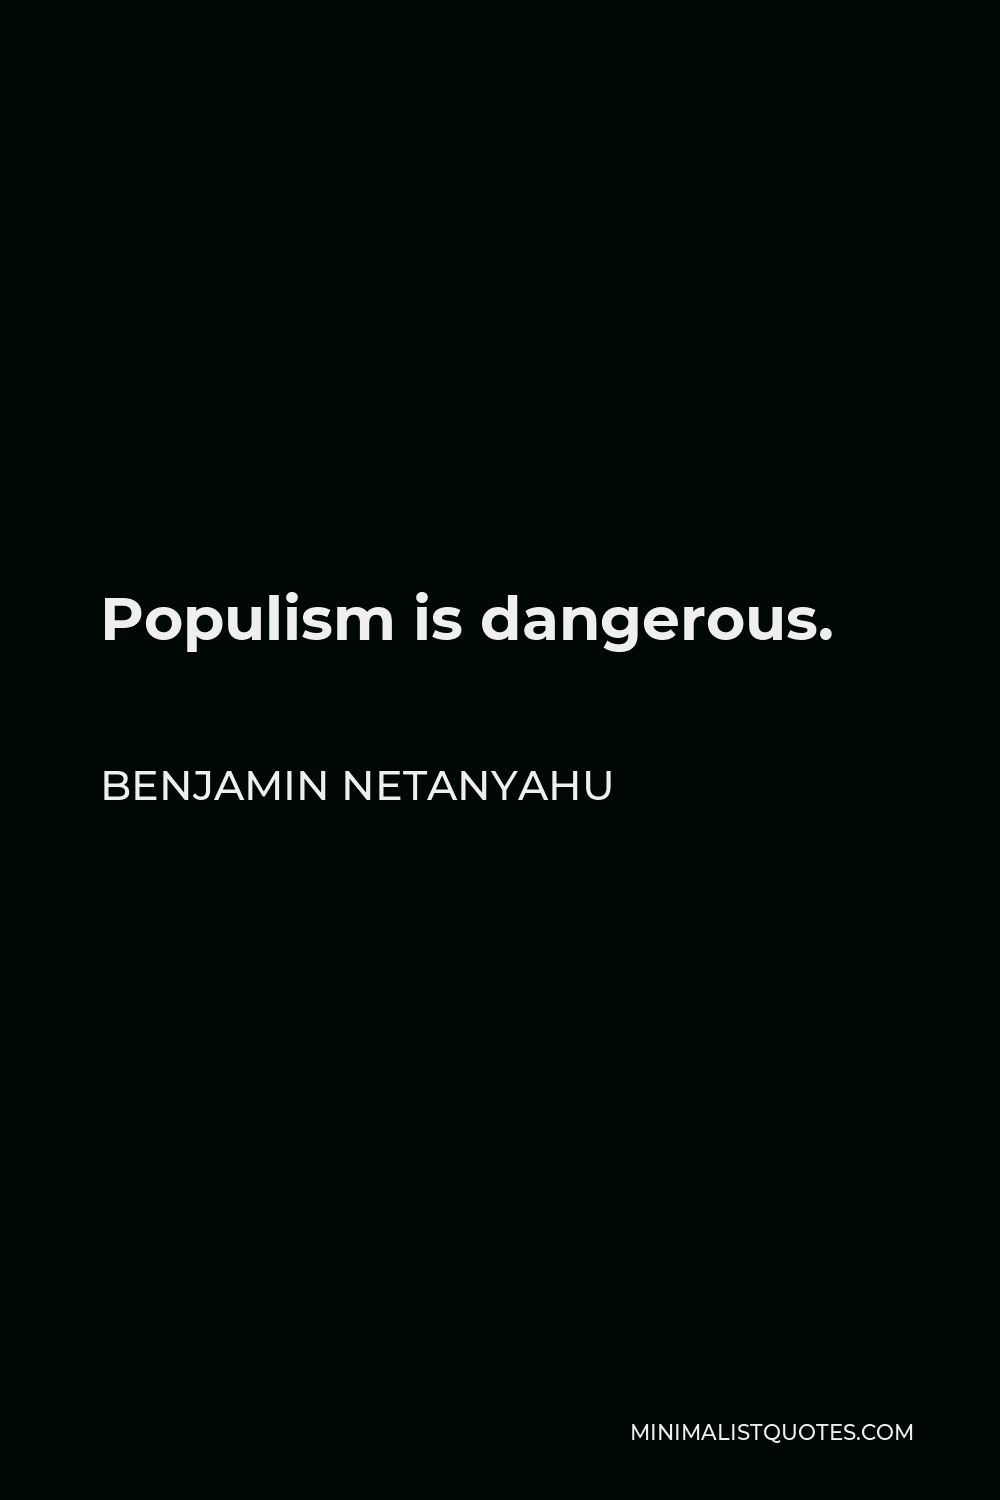 Benjamin Netanyahu Quote - Populism is dangerous.